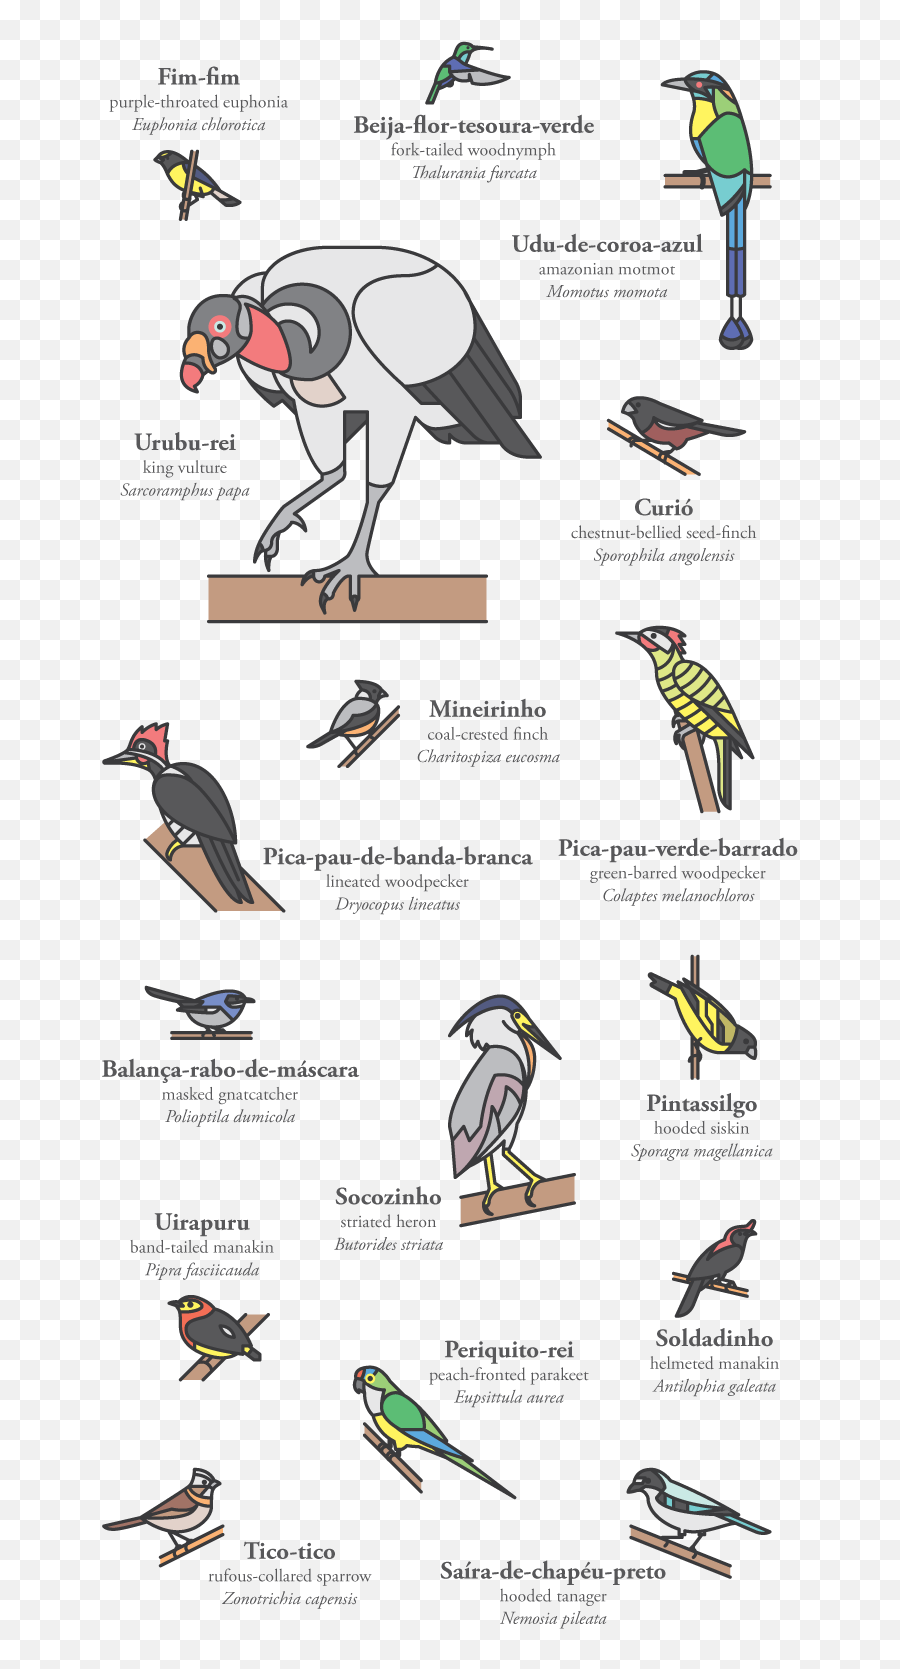 Pedro Machado - Cerrado Birds Piciformes Png,Woodpecker Icon